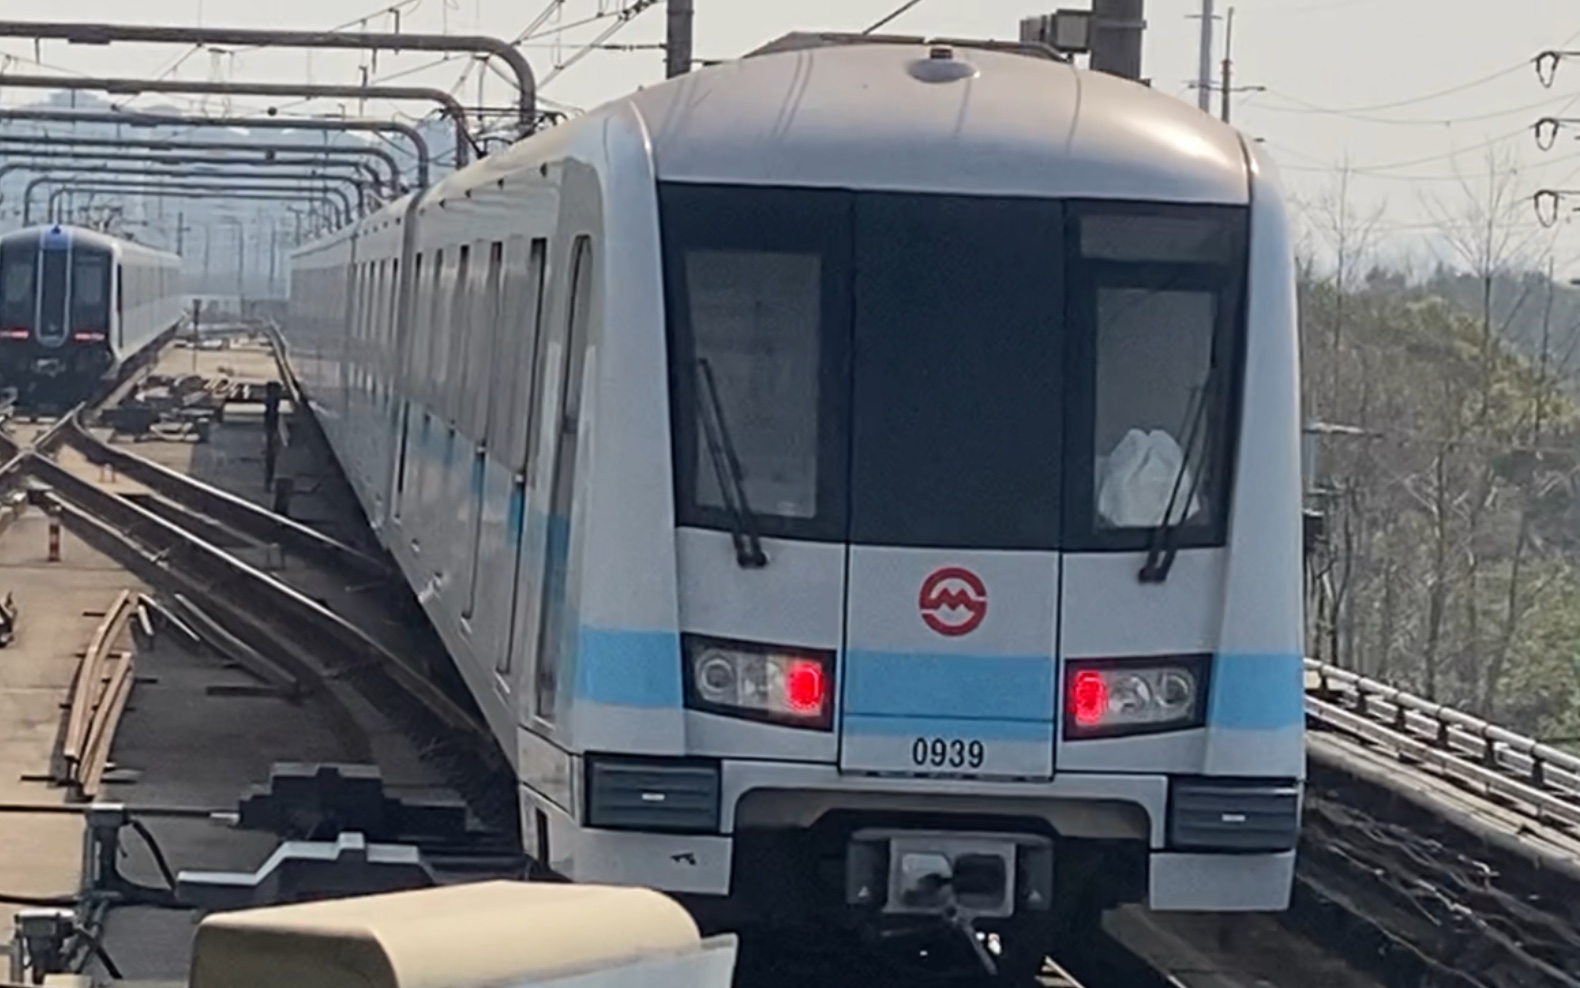 上海地铁9号线(09a02 坂田/冰露)0939号车佘山出站